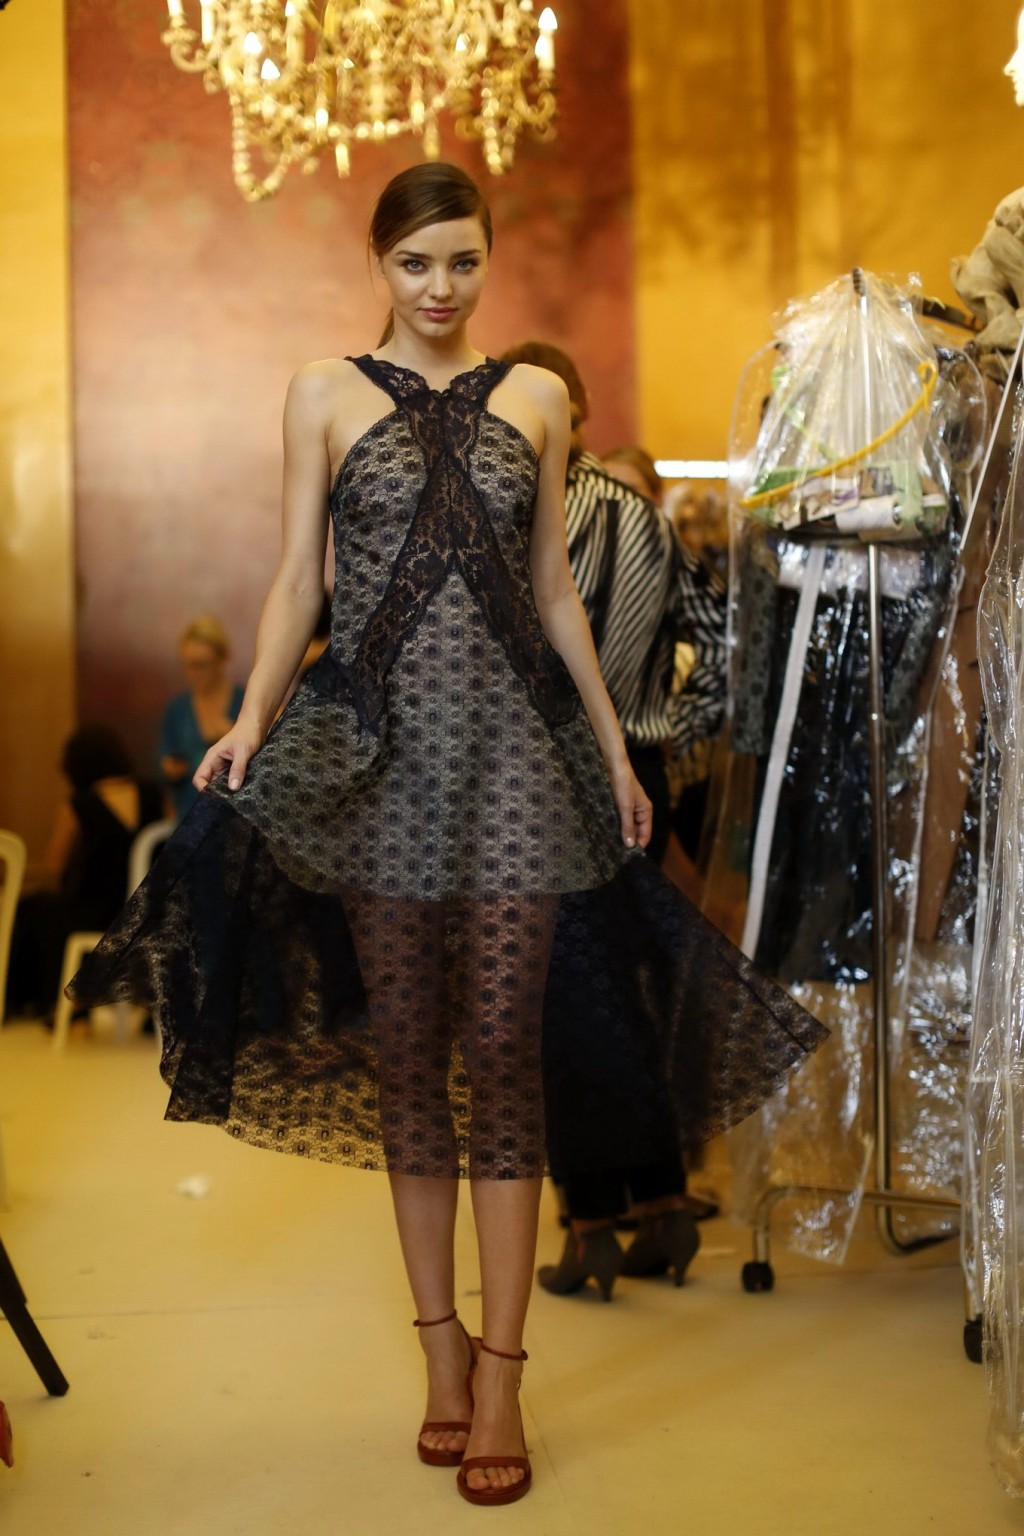 Miranda Kerr busty a stella mccartney fashion show pfw a Parigi
 #75217306